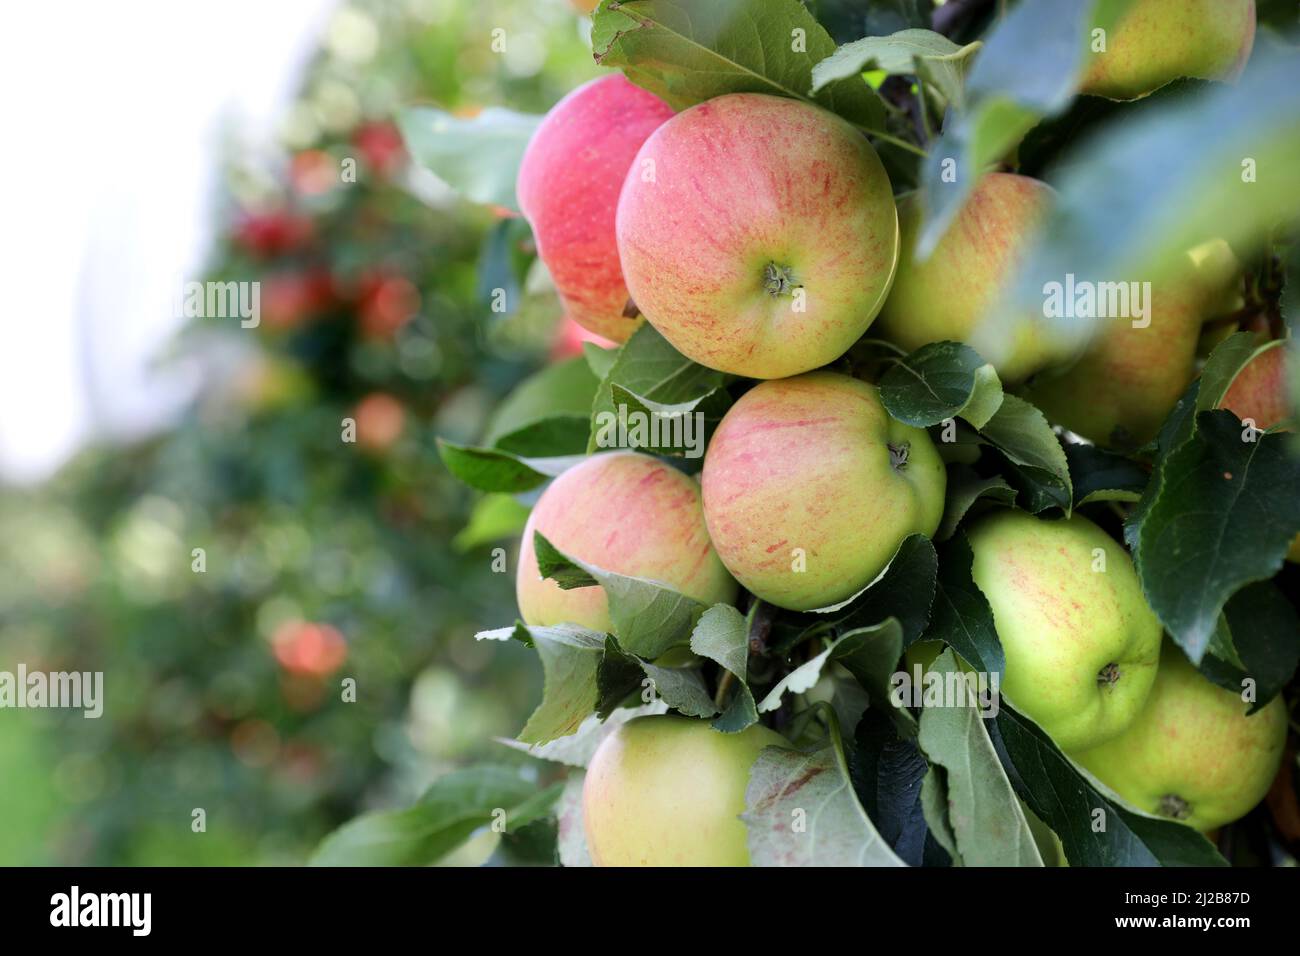 Verger de pomme : culture de pommes dessert, pommes bicolores sur un pommier avant récolte Banque D'Images